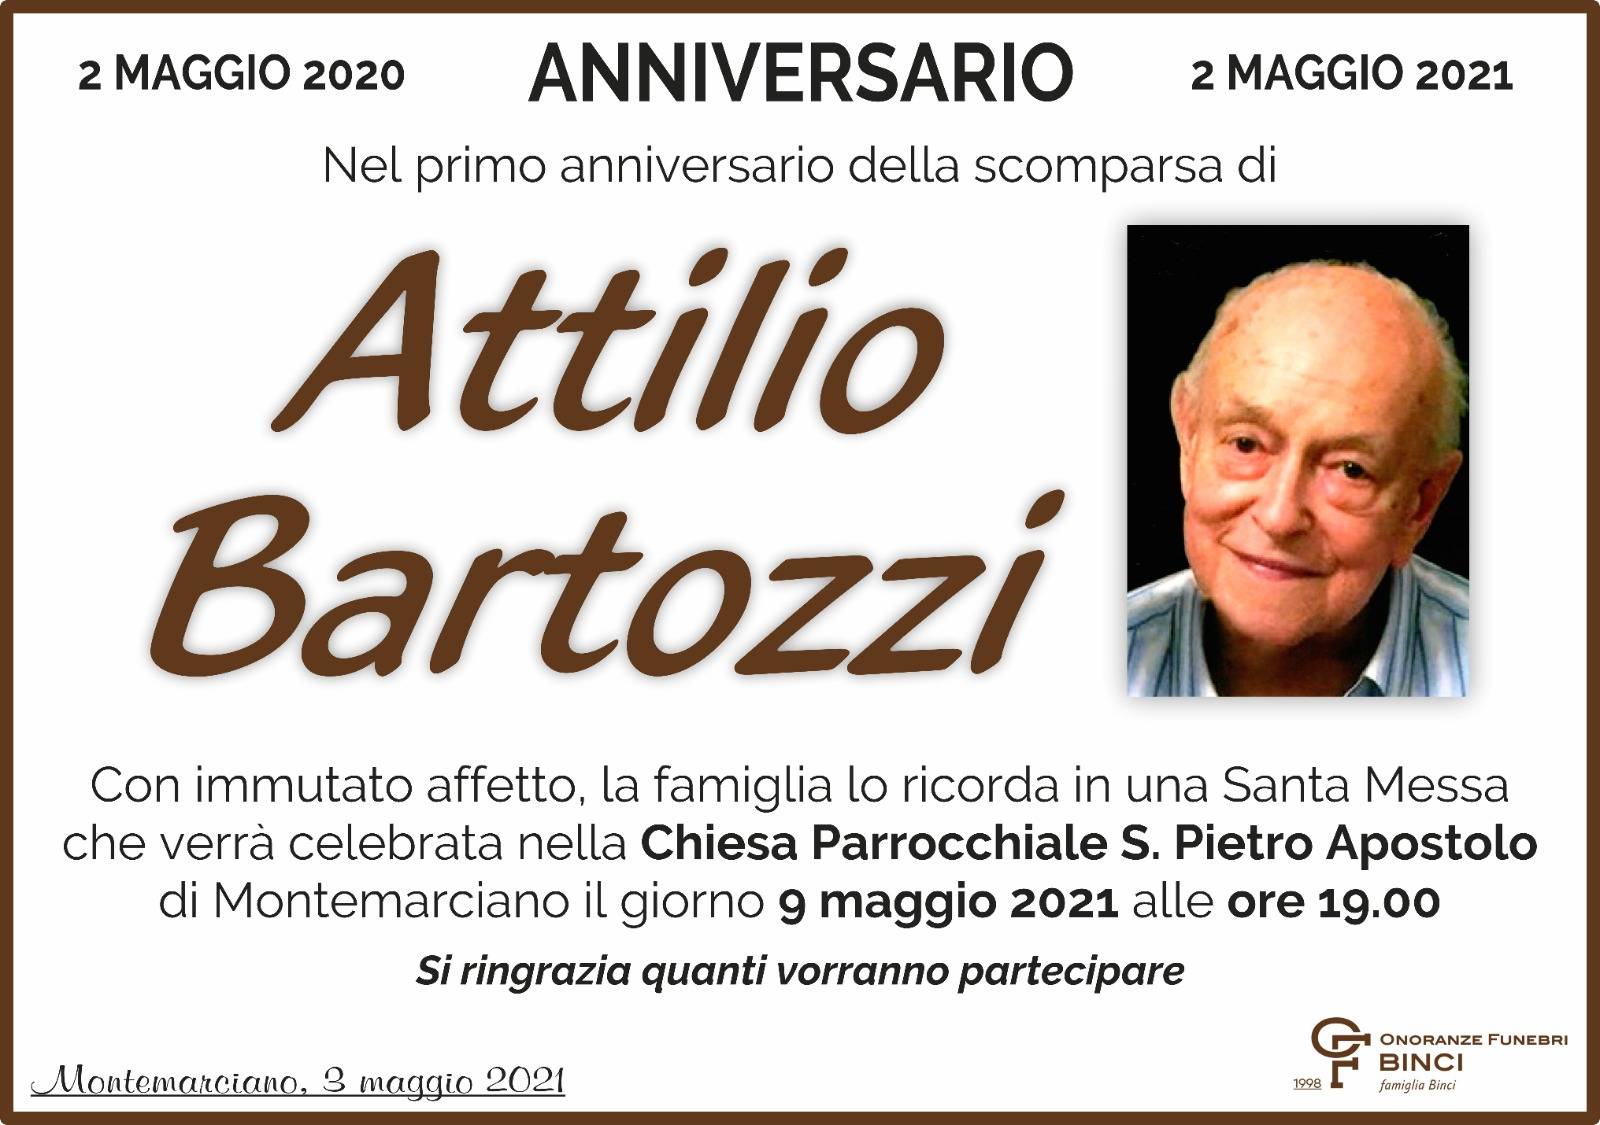 Attilio Bartozzi